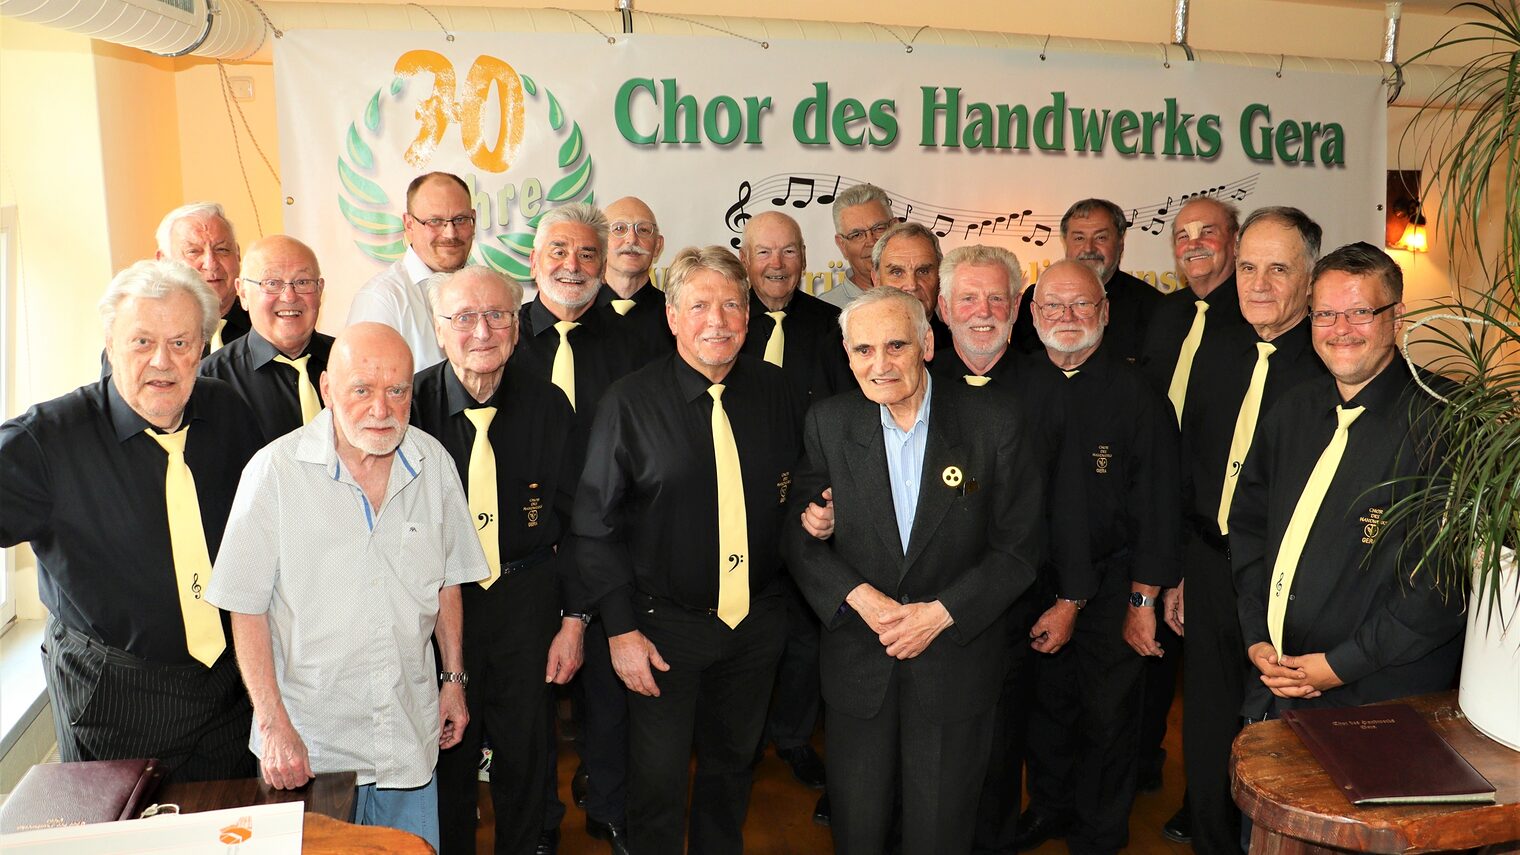 70 Jahre Chor des Handwerks